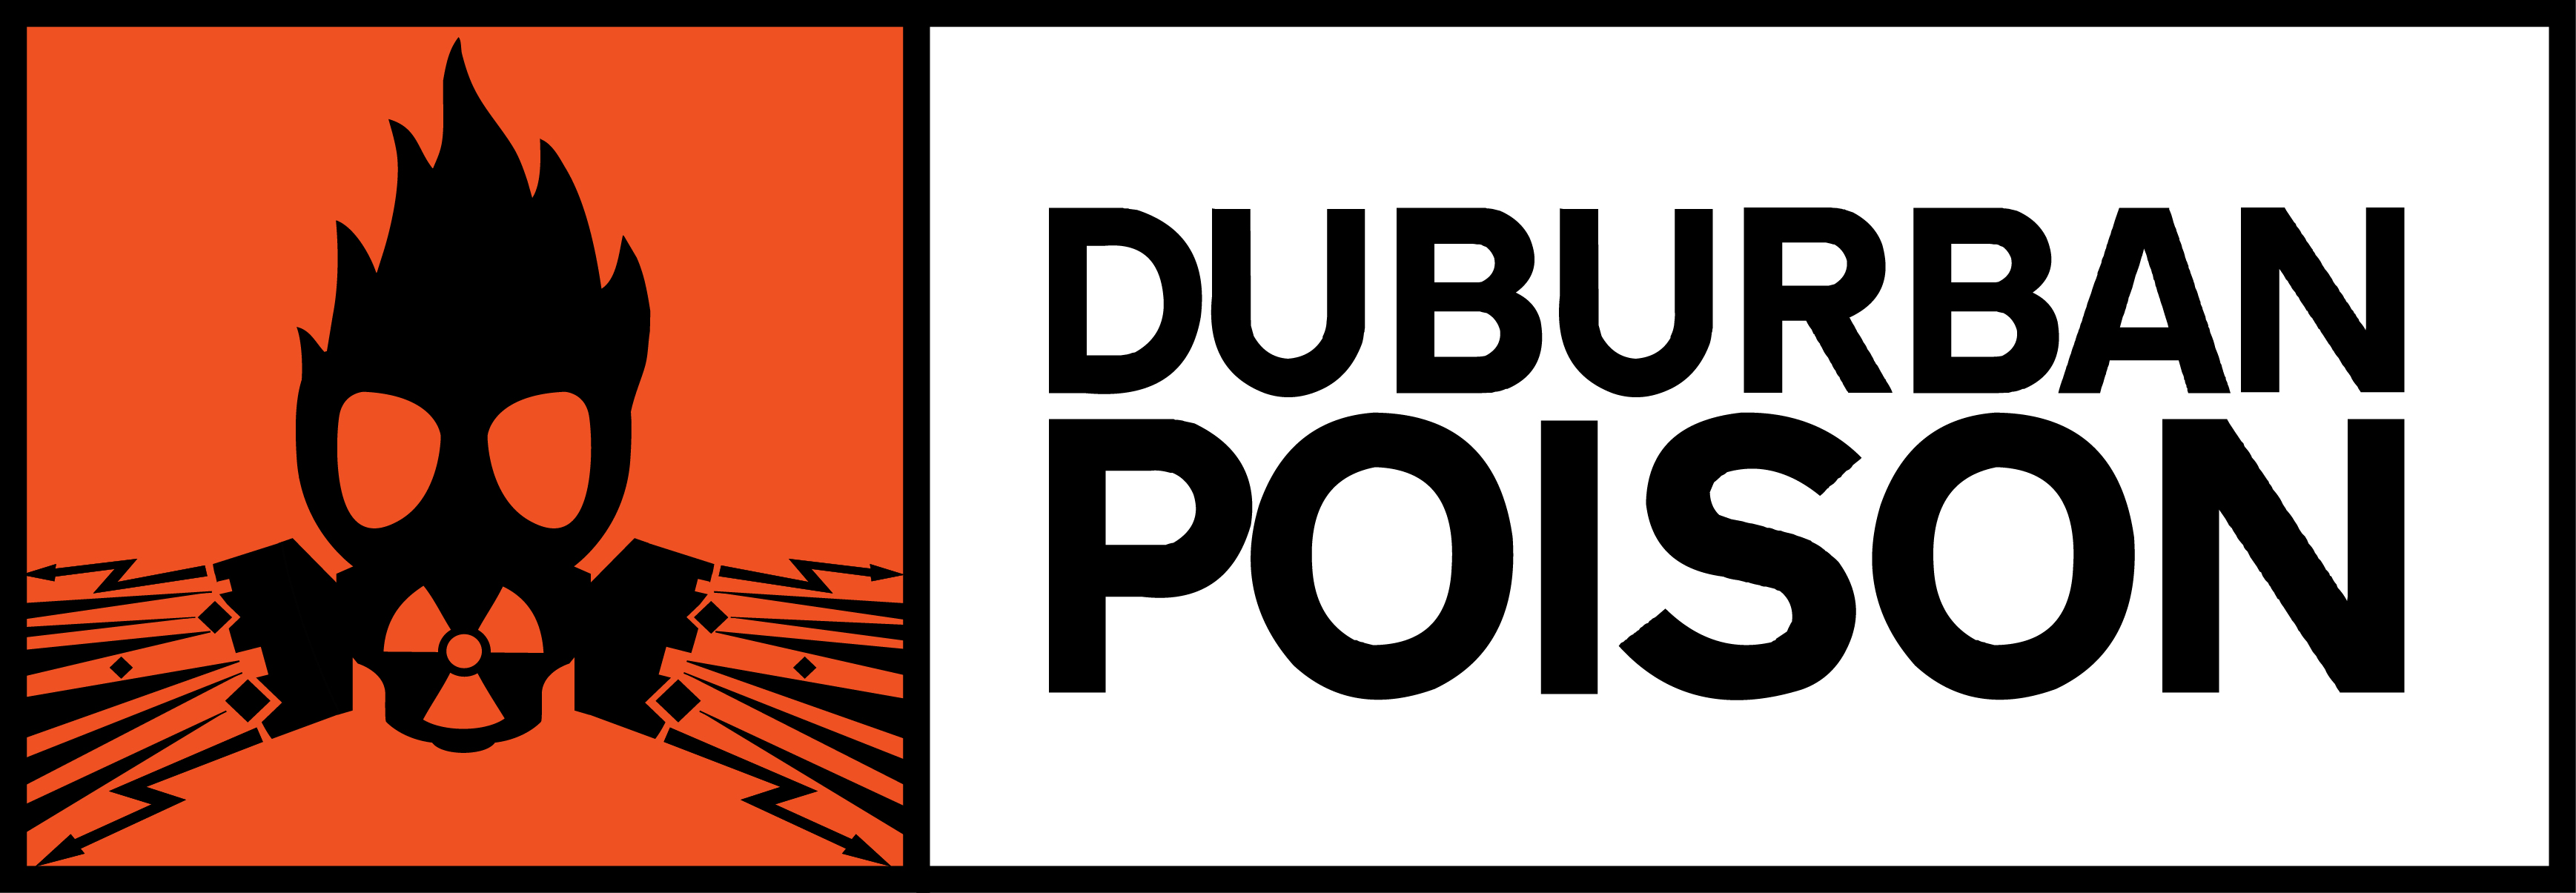 Duburban Poison Drum and Bass | Duburban Poison Profile